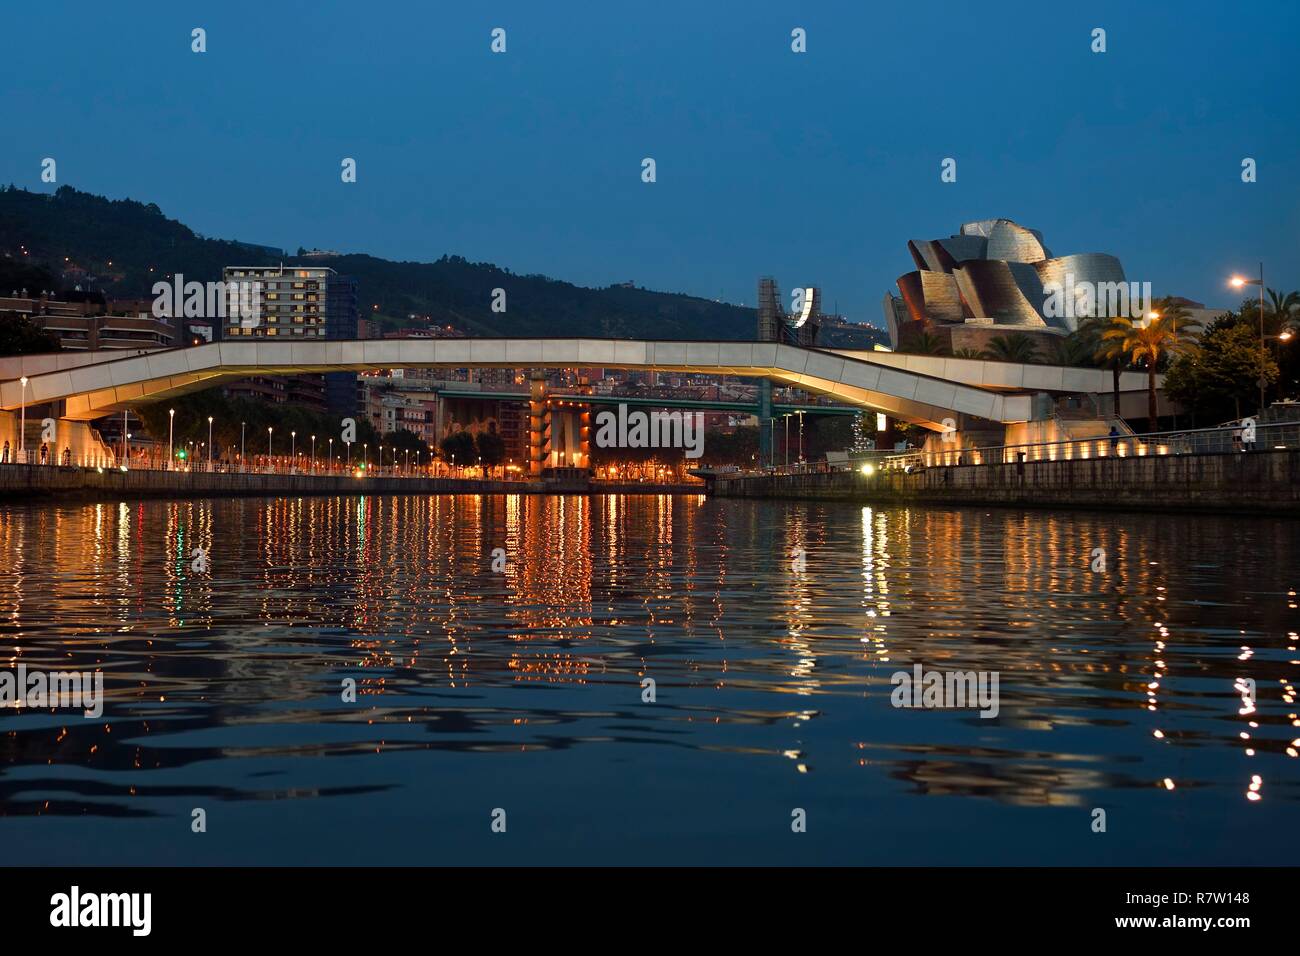 Espagne, Pays Basque, Province de Biscaye, Bilbao, le père Pedro Arrupe caillebotis et le musée Guggenheim conçu par Frank Gehry Banque D'Images